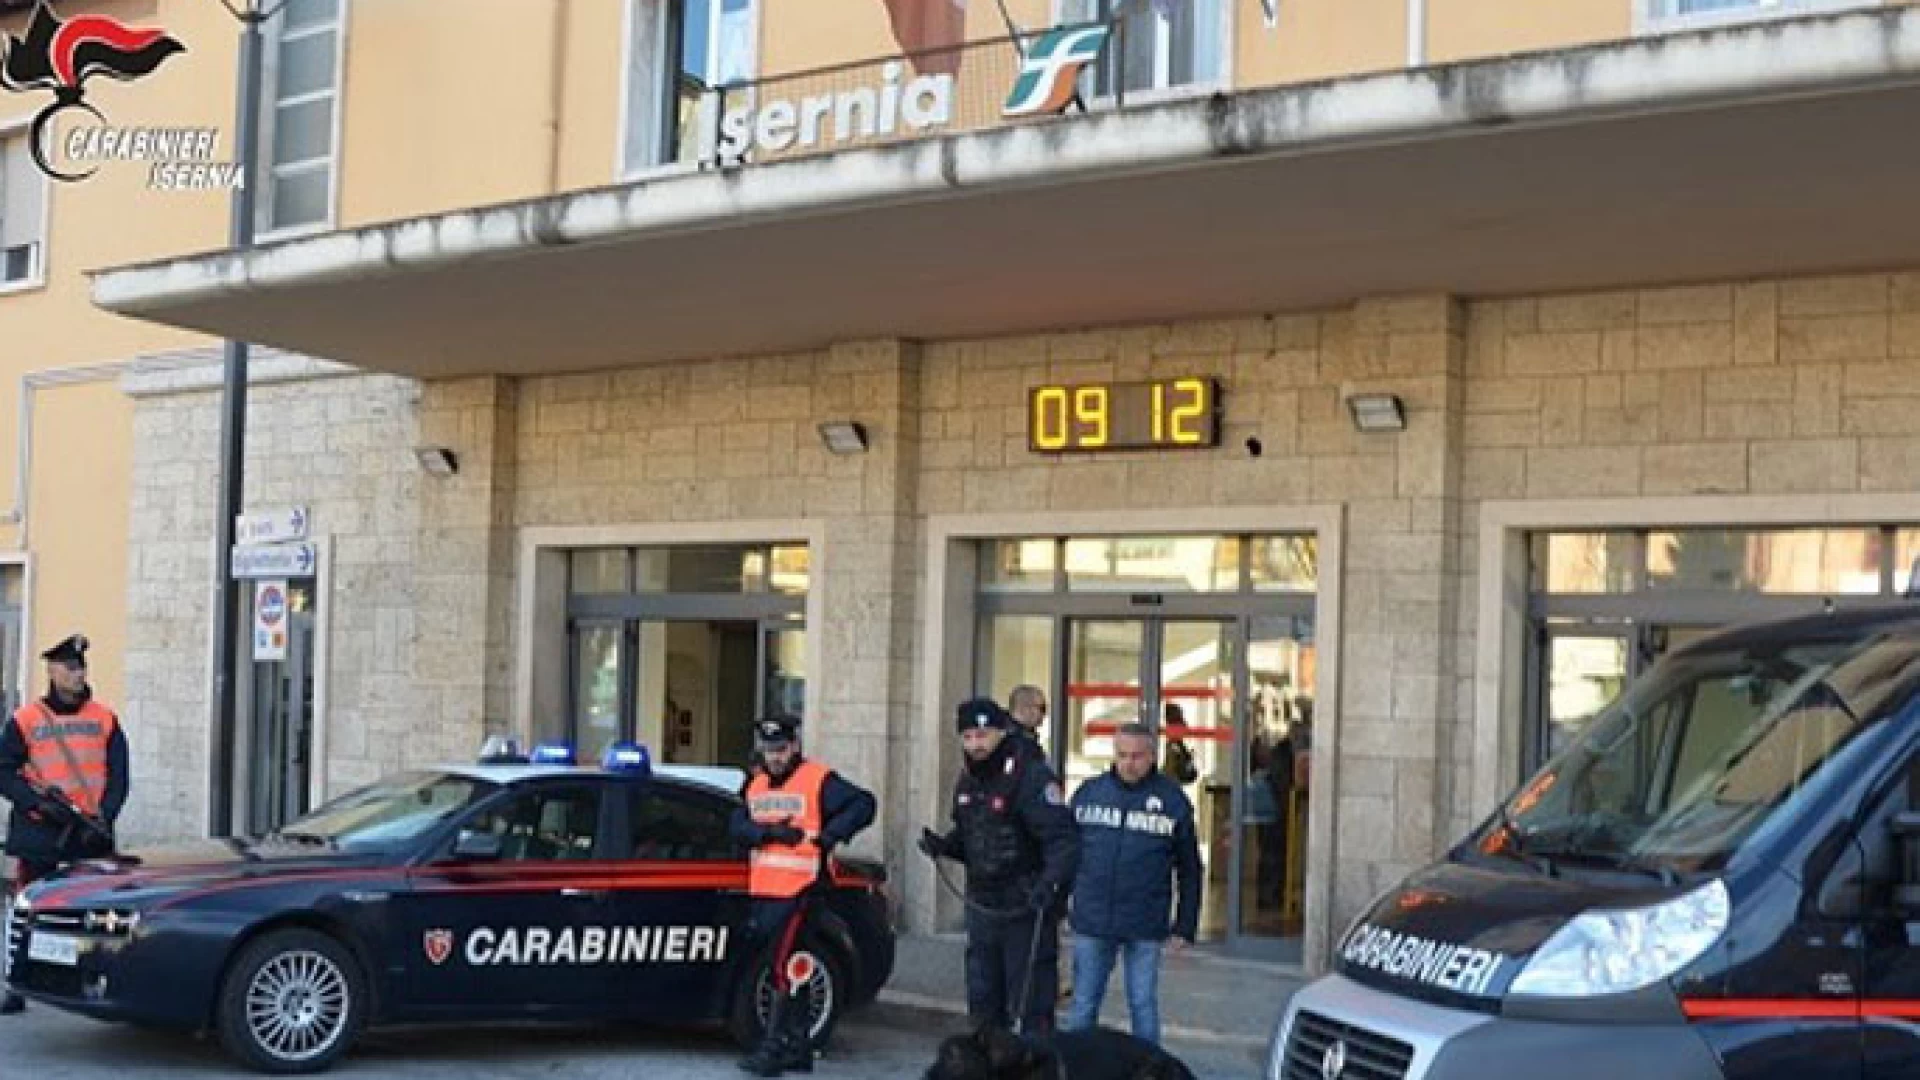 Isernia: Controlli antidroga dei Carabinieri presso Istituti Scolastici. Due studenti trovati in possesso di hashish.